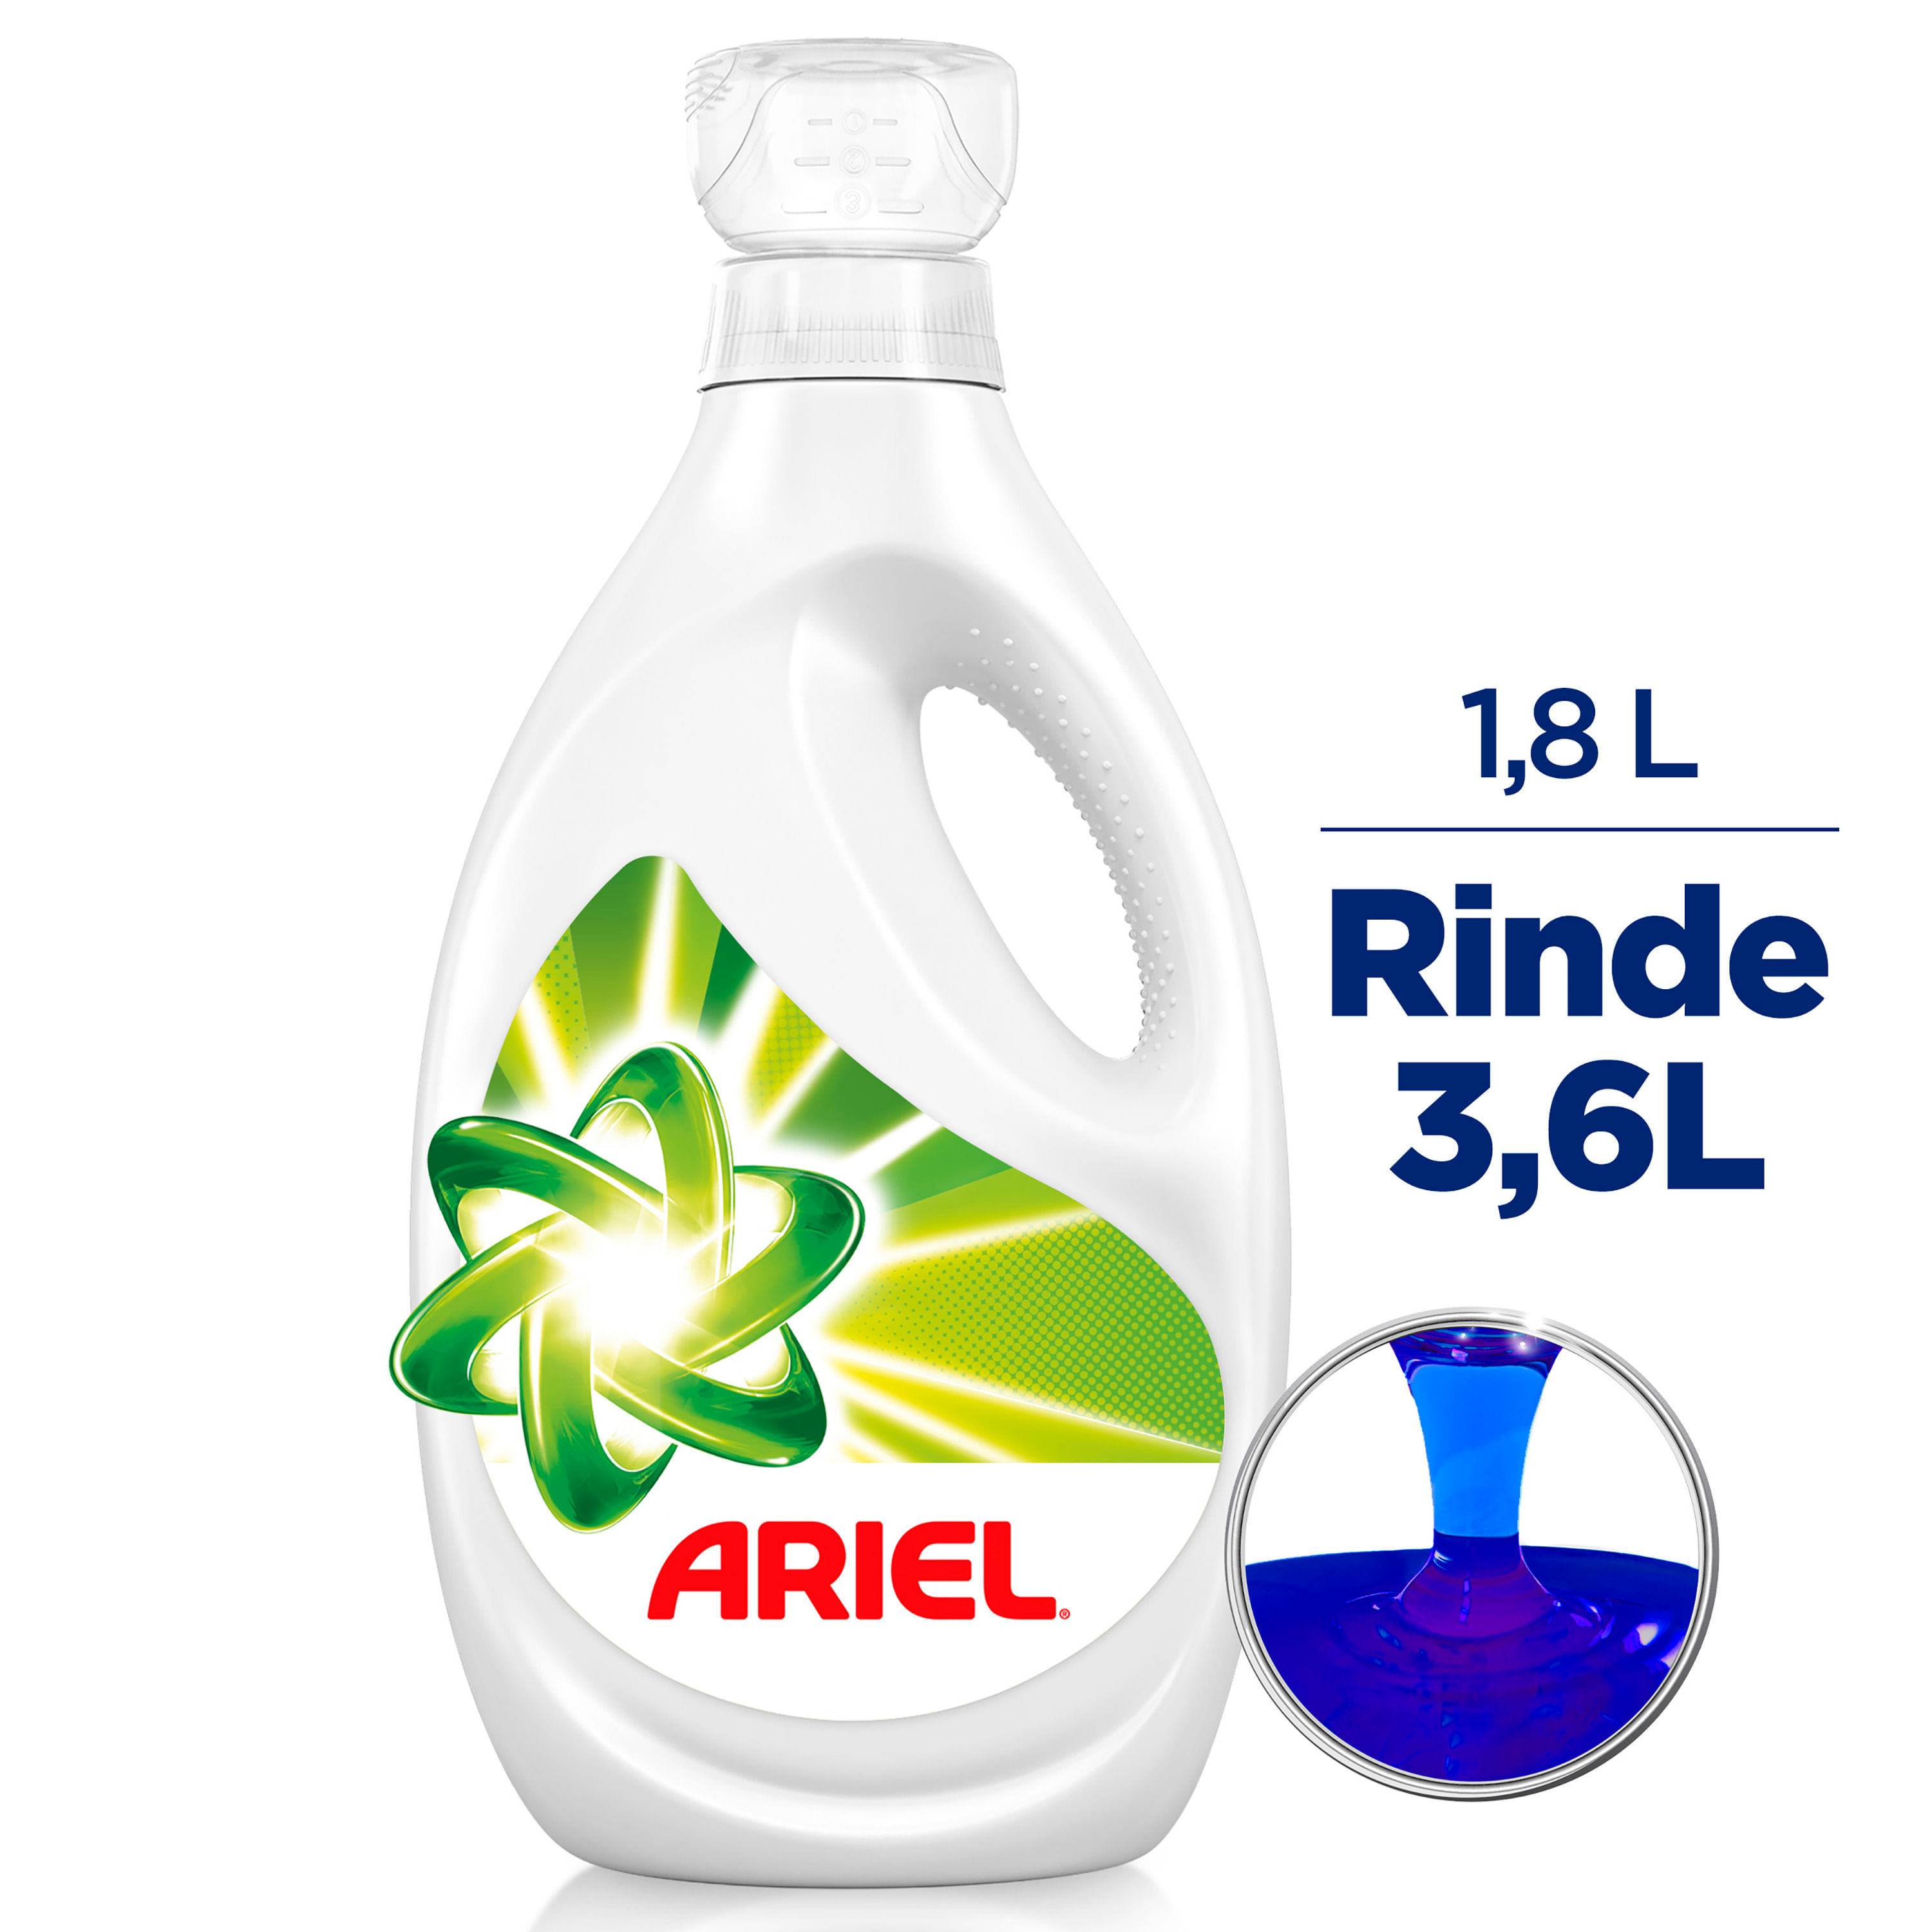 Comprar Detergente Líquido Dreft etapa 2: Bebe Activo, 32 lavadas